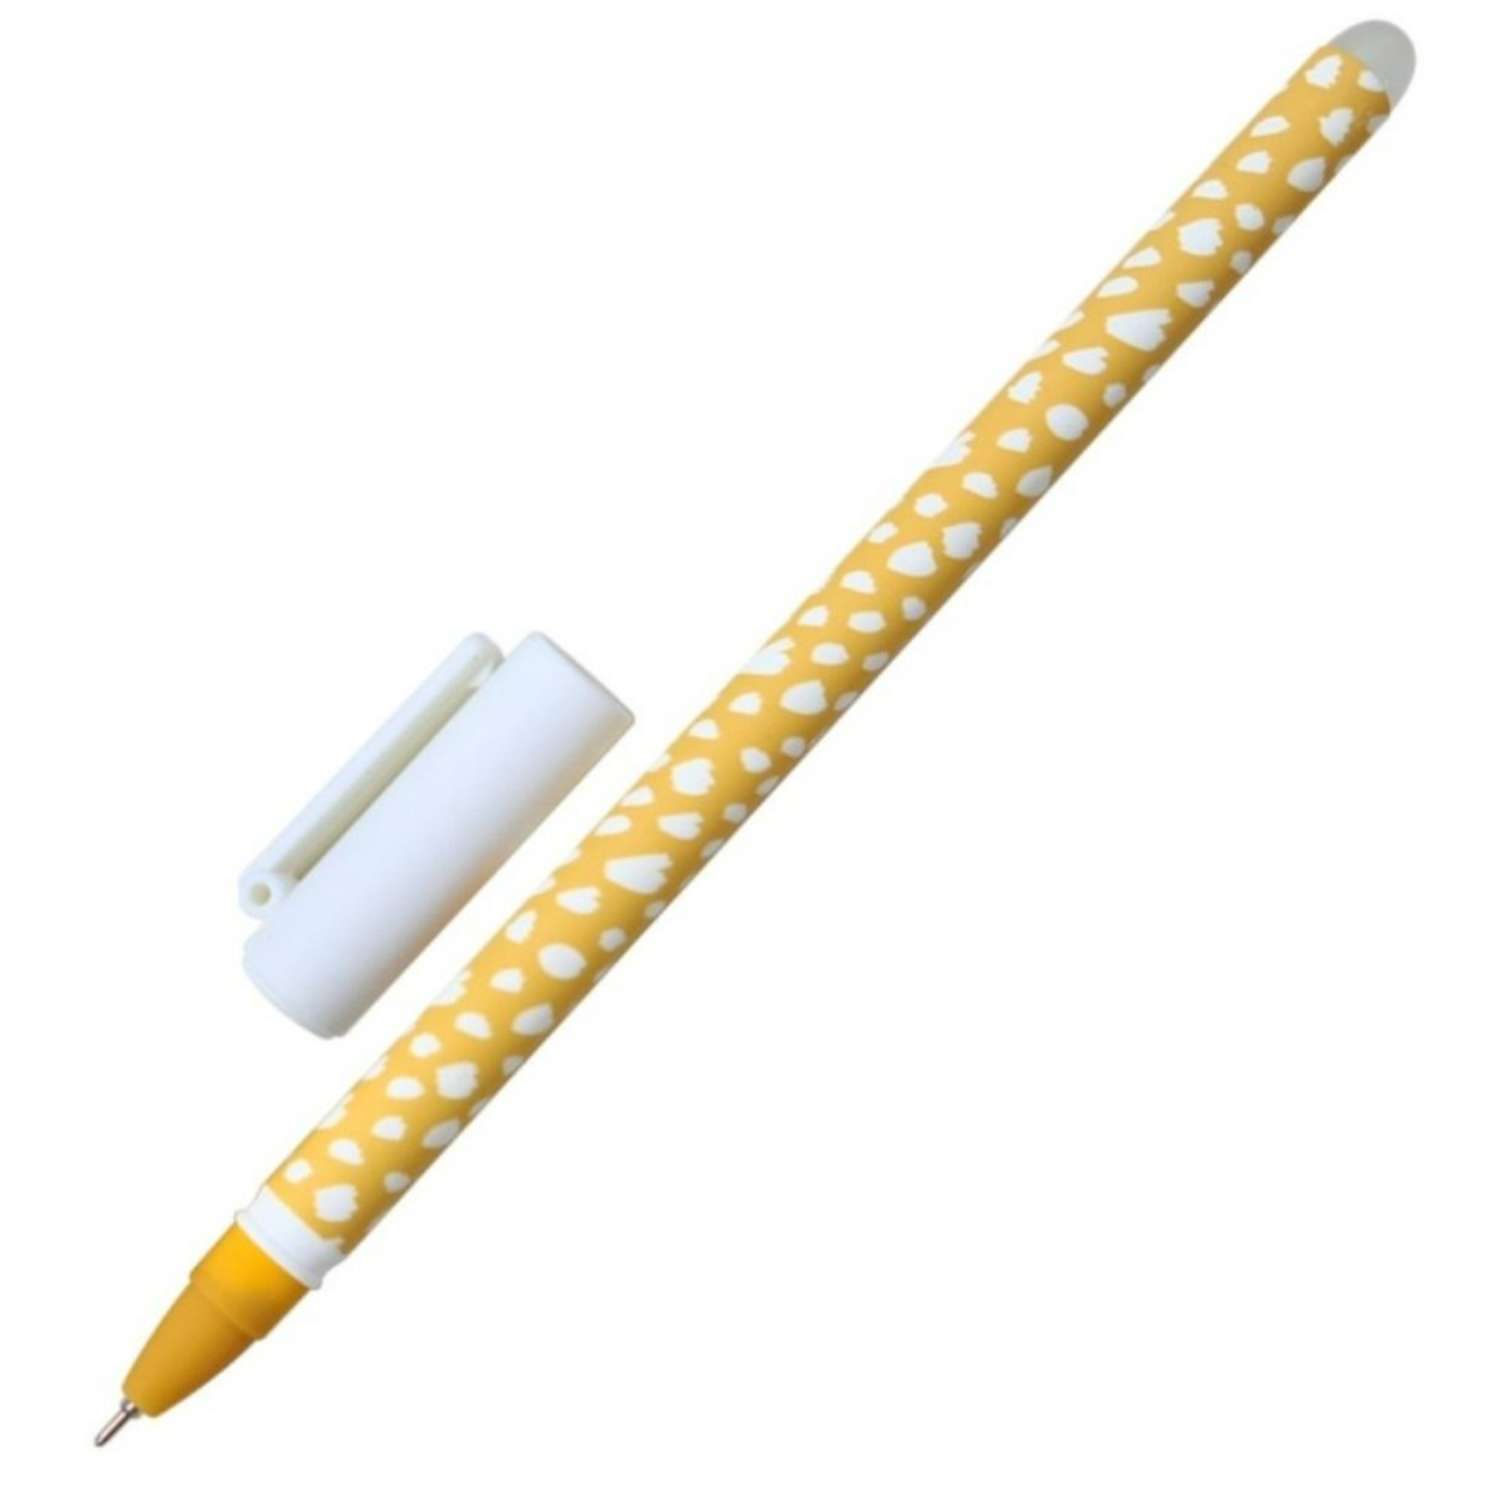 Ручка Be Smart гелевая 0.5 мм синий пиши-стирай fyr-fyr 20 штук - фото 1